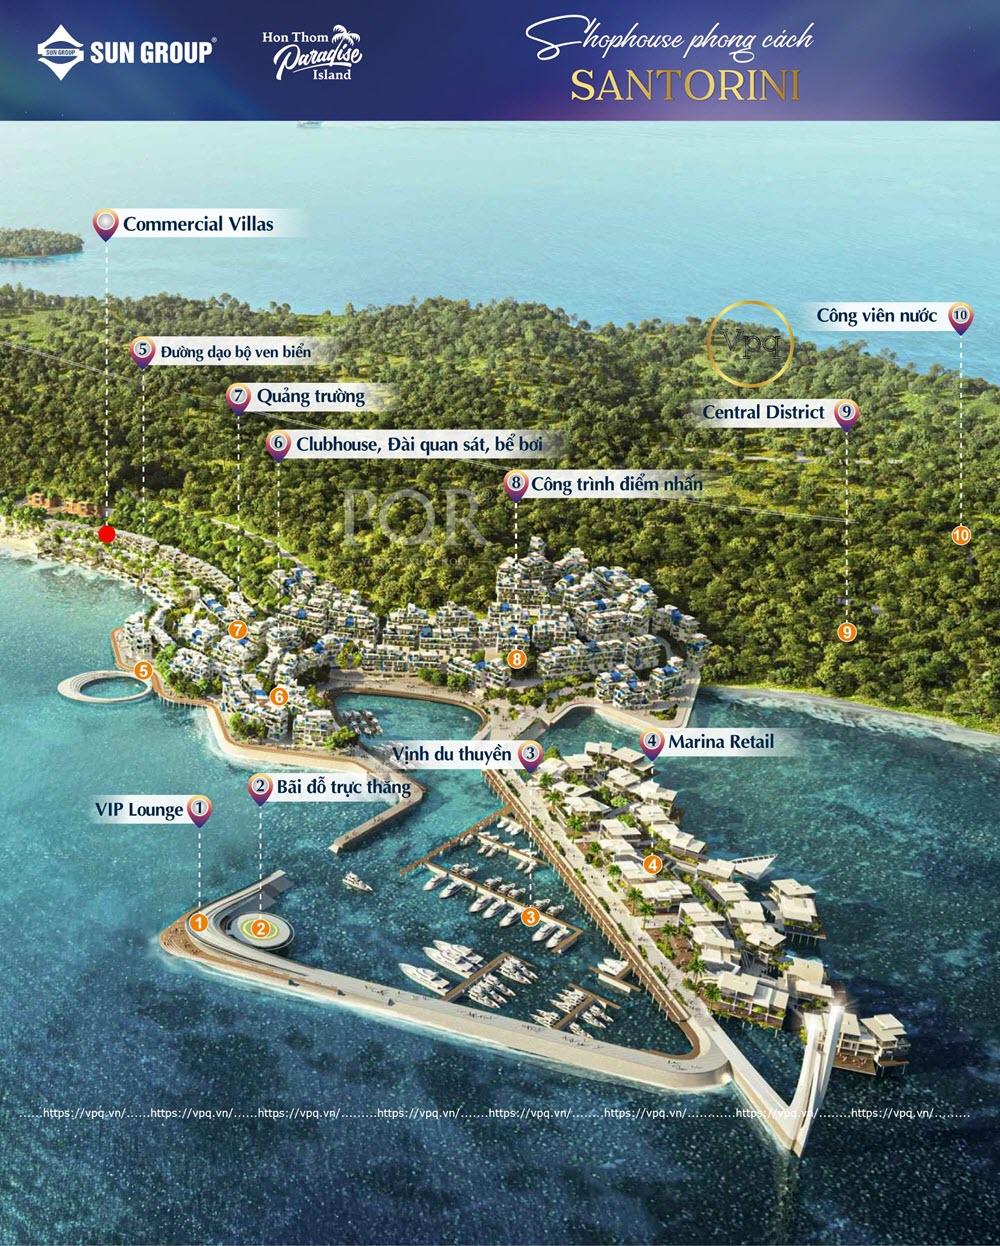 Dự án Shophouse vịnh du thuyền phong cách Santorini ra mắt nhà đầu tư